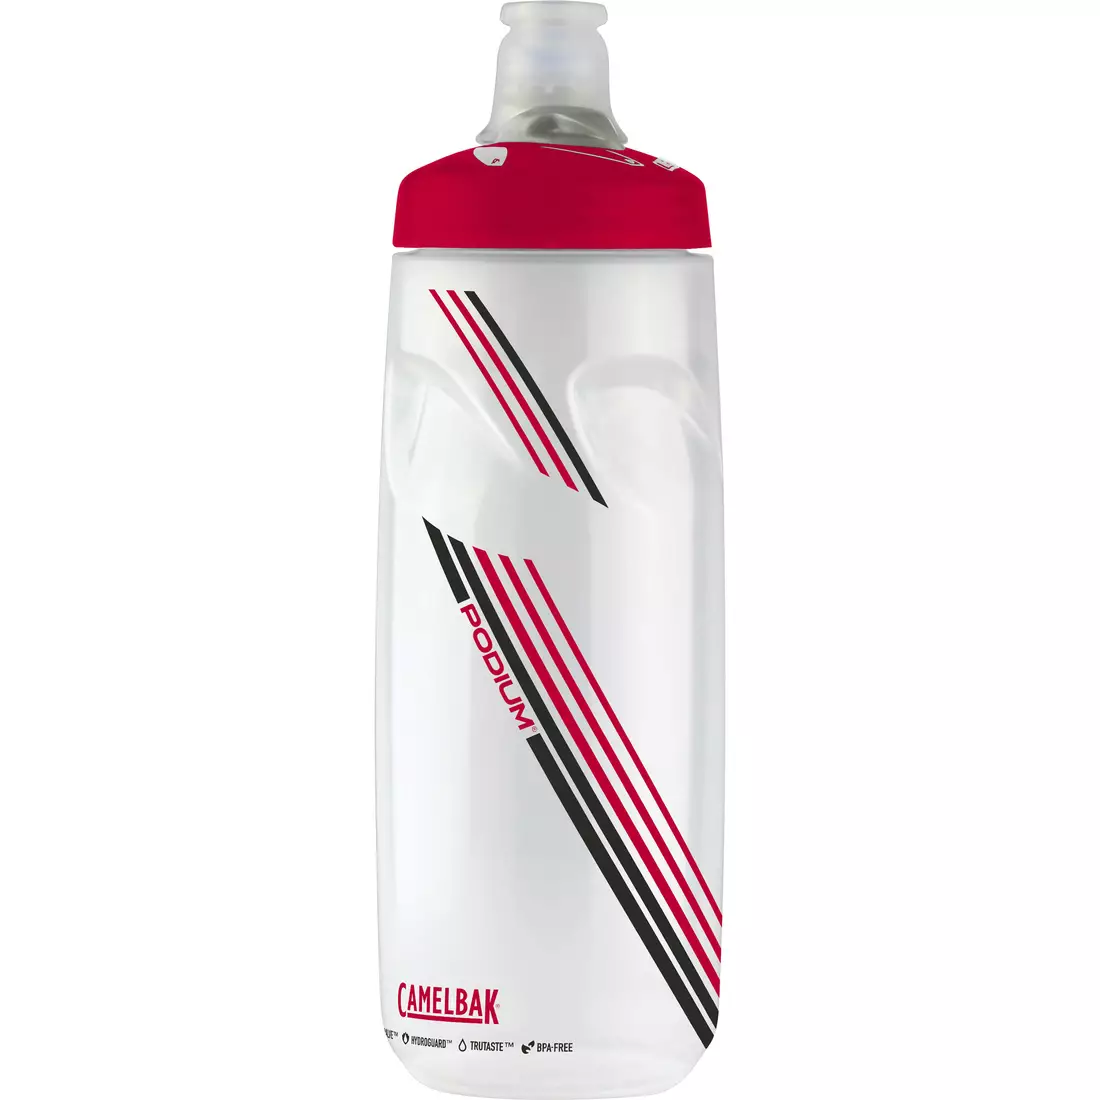 Camelbak SS18 Podium Fahrradwasserflasche 24oz/ 710 ml Clear Red